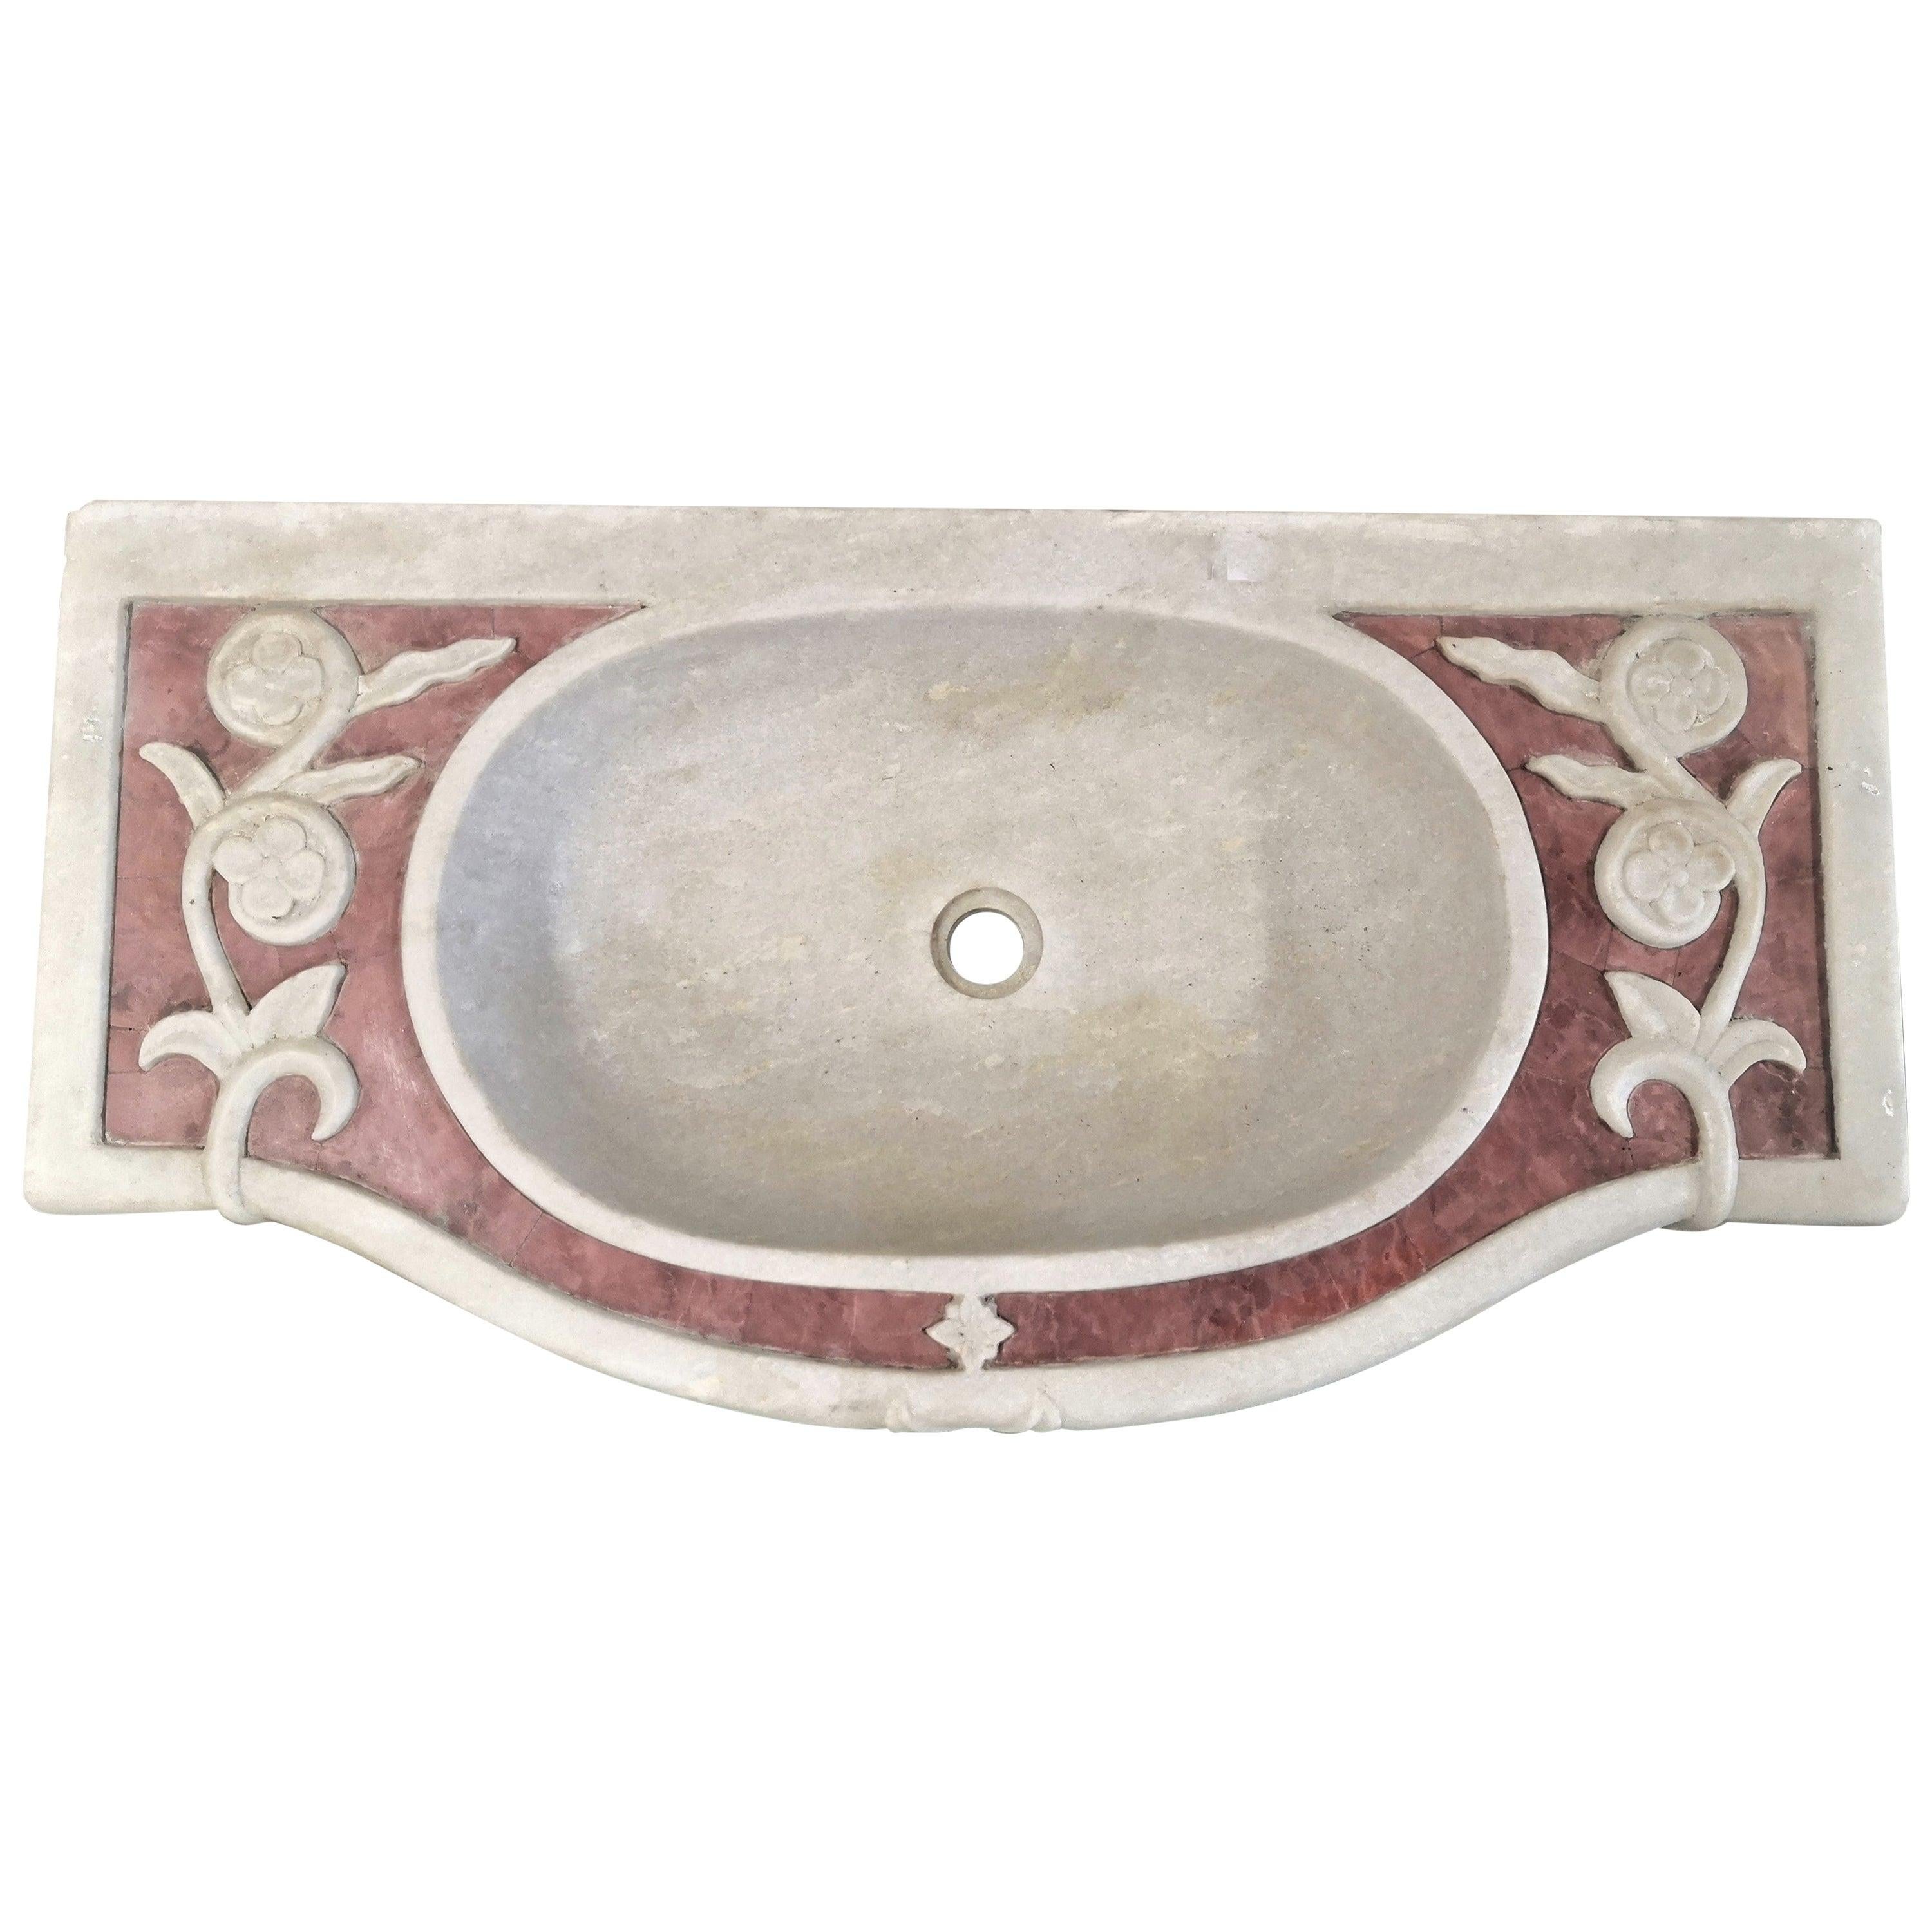 Klassisches Waschbecken aus geschnitztem Marmor und Stein mit Intarsien